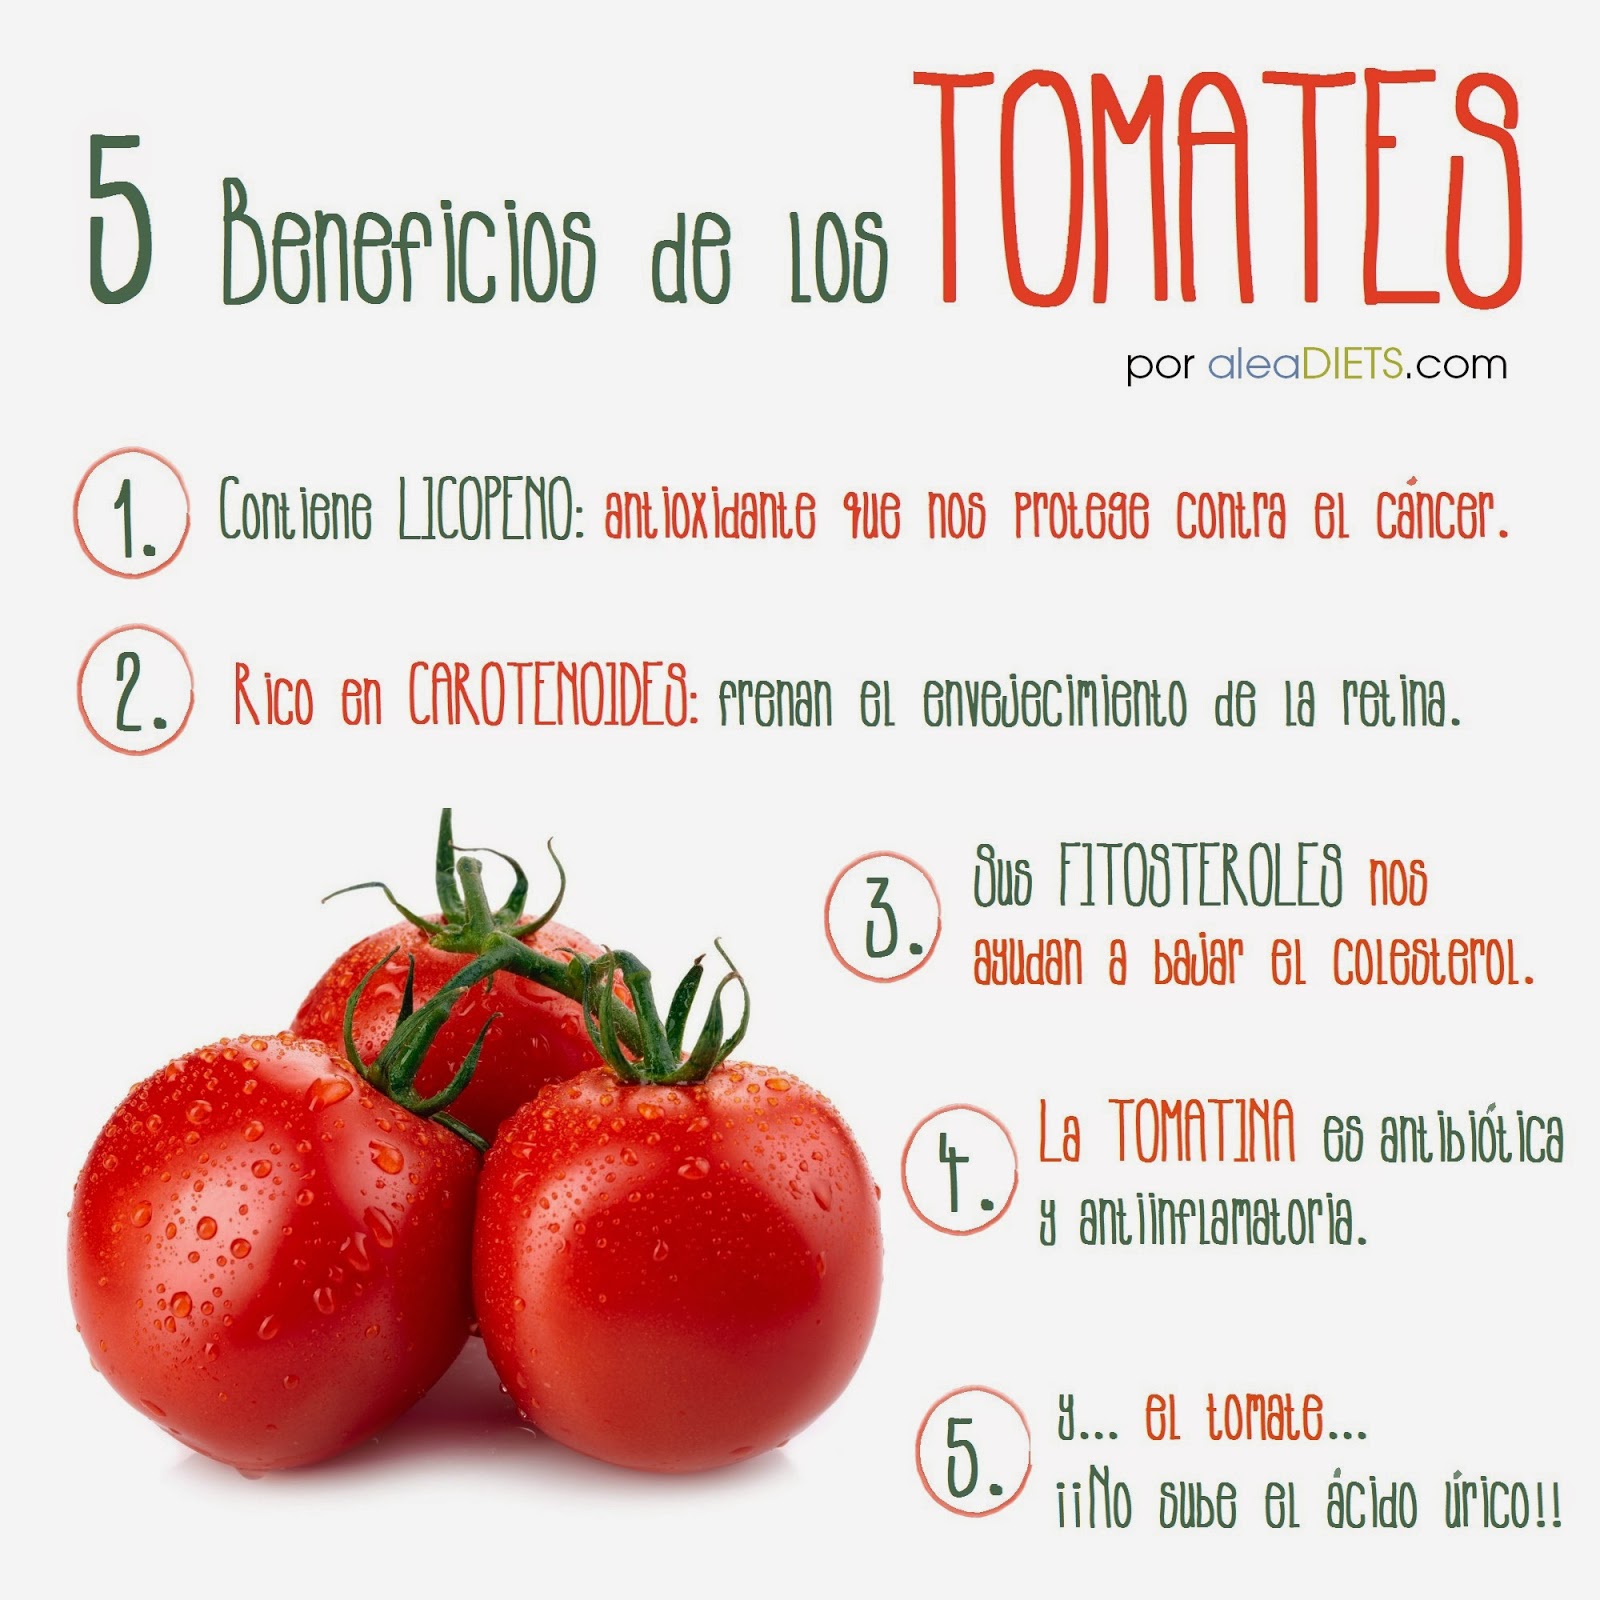 Beneficios del tomate, por aleaDIETS